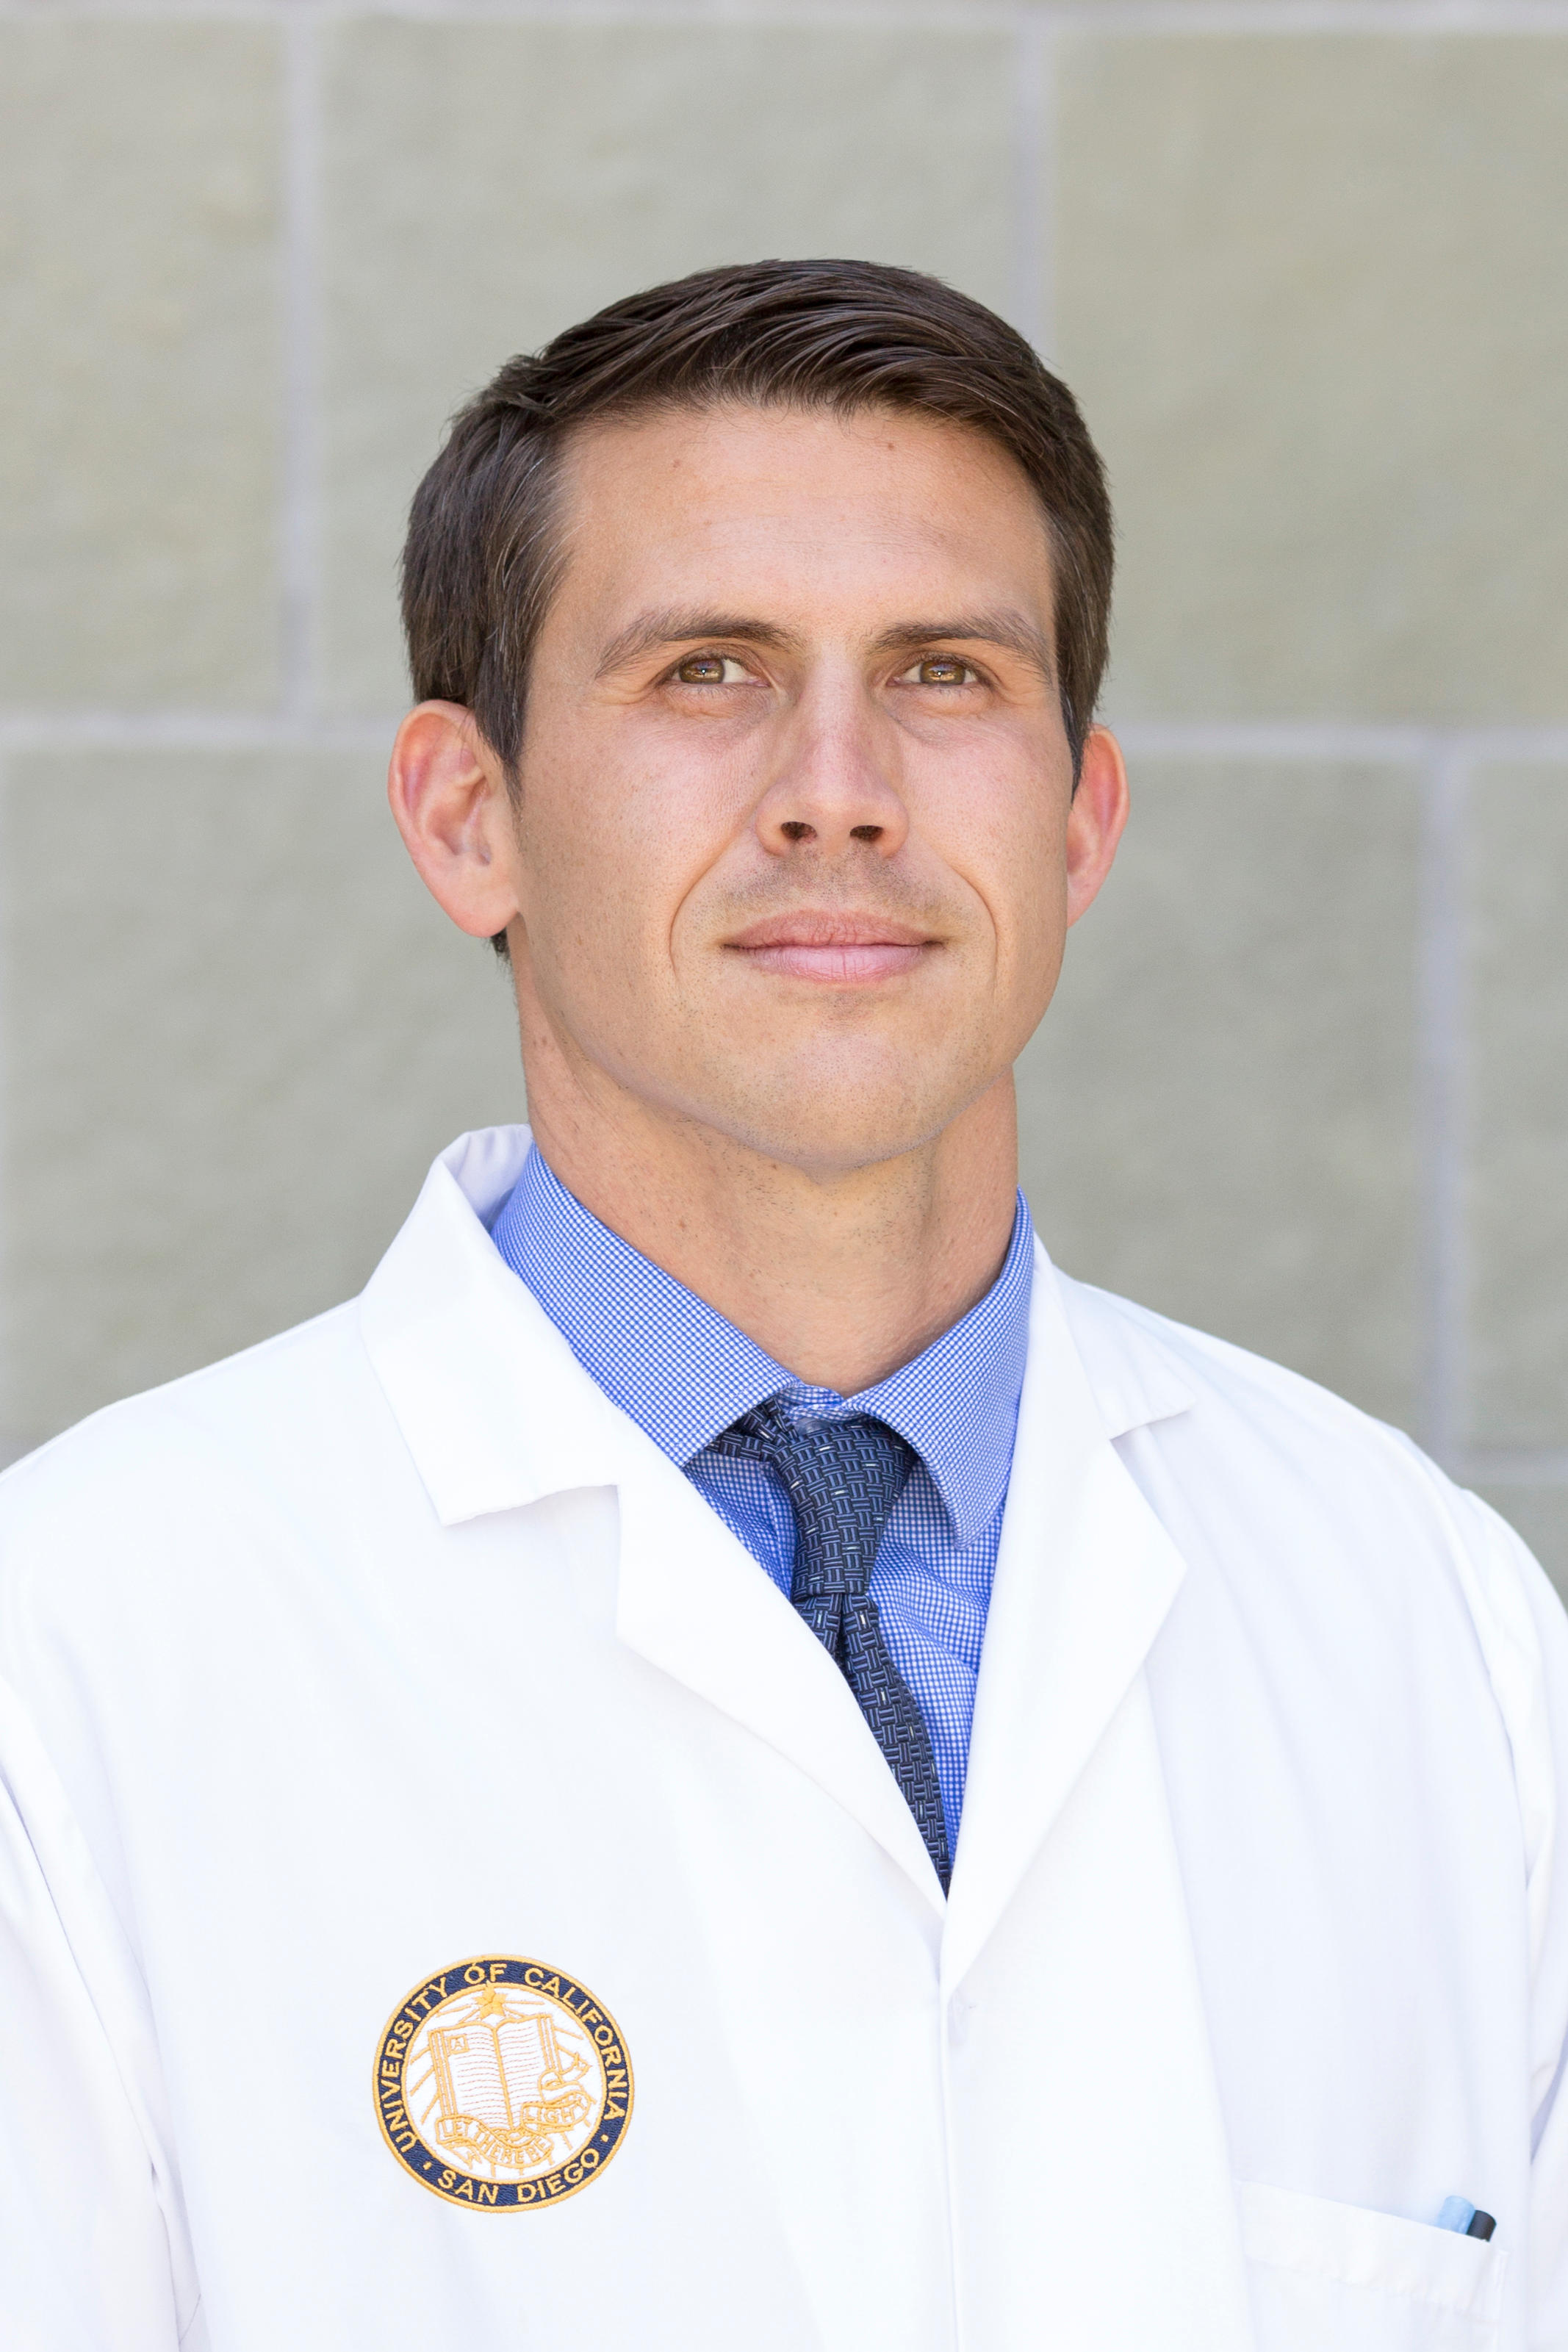 Dr. Brent Rose, MD